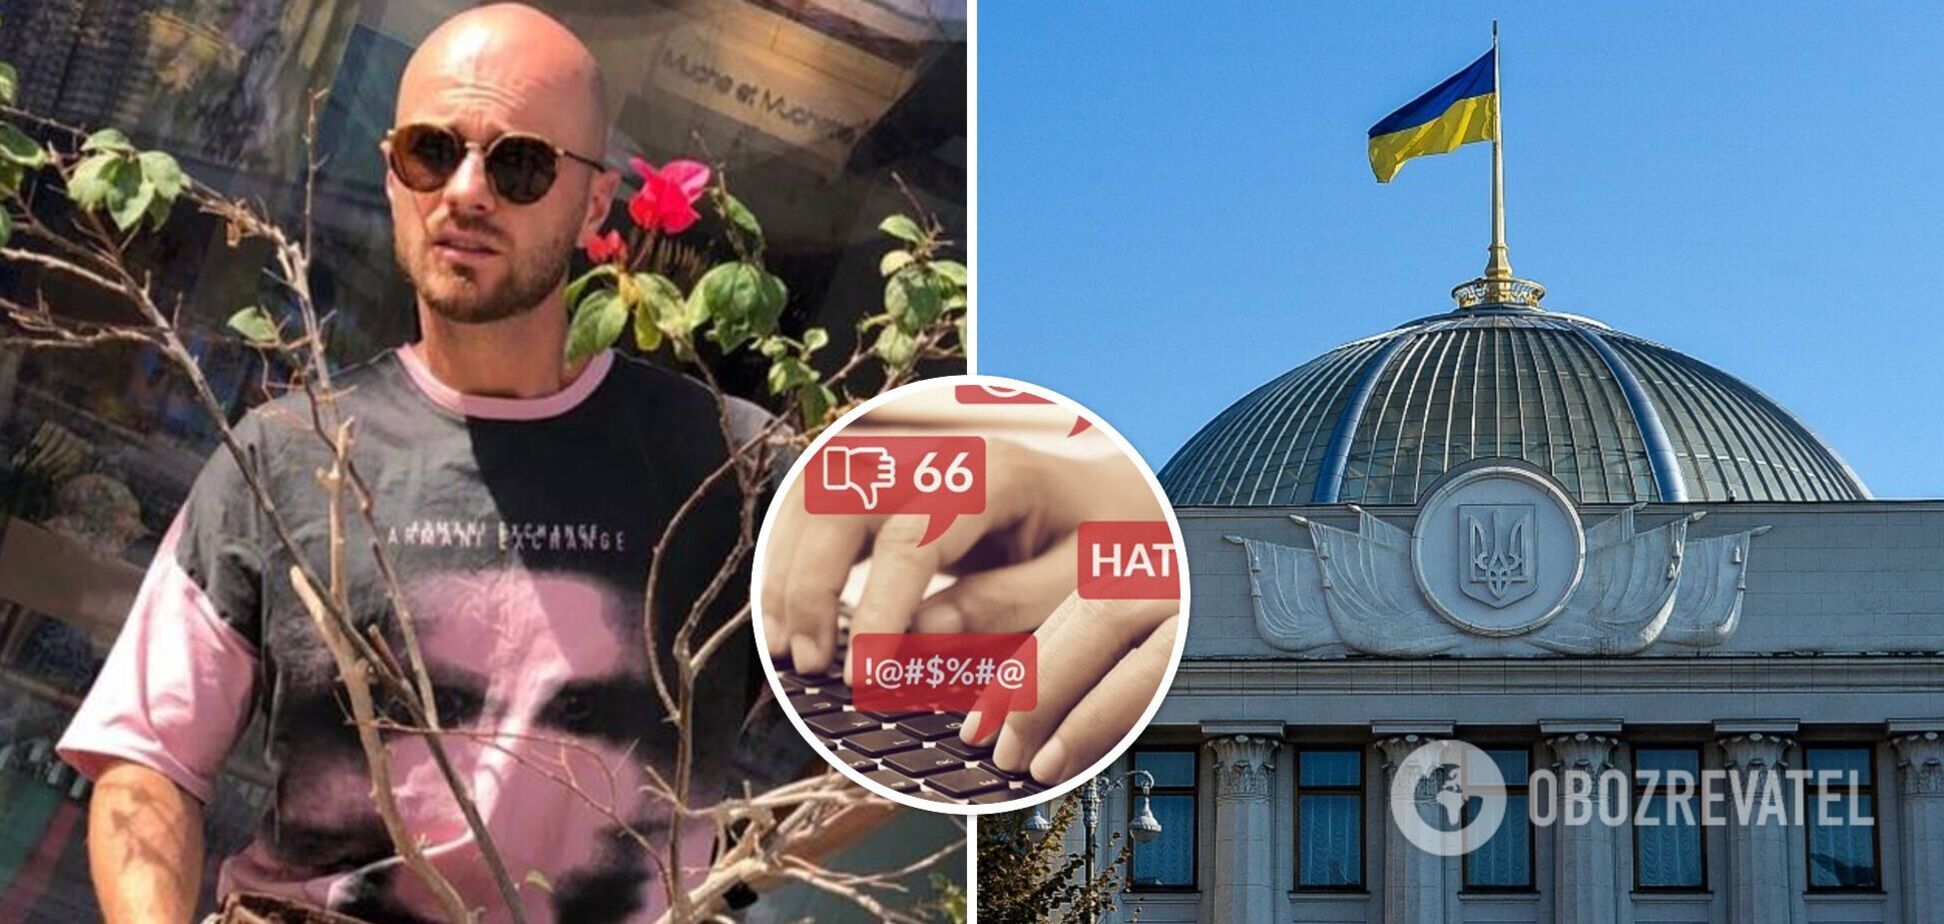 'Може забути про кар'єру в Україні': у мережі 'рознесли' Влада Яму, який мріє стати політиком. Фото